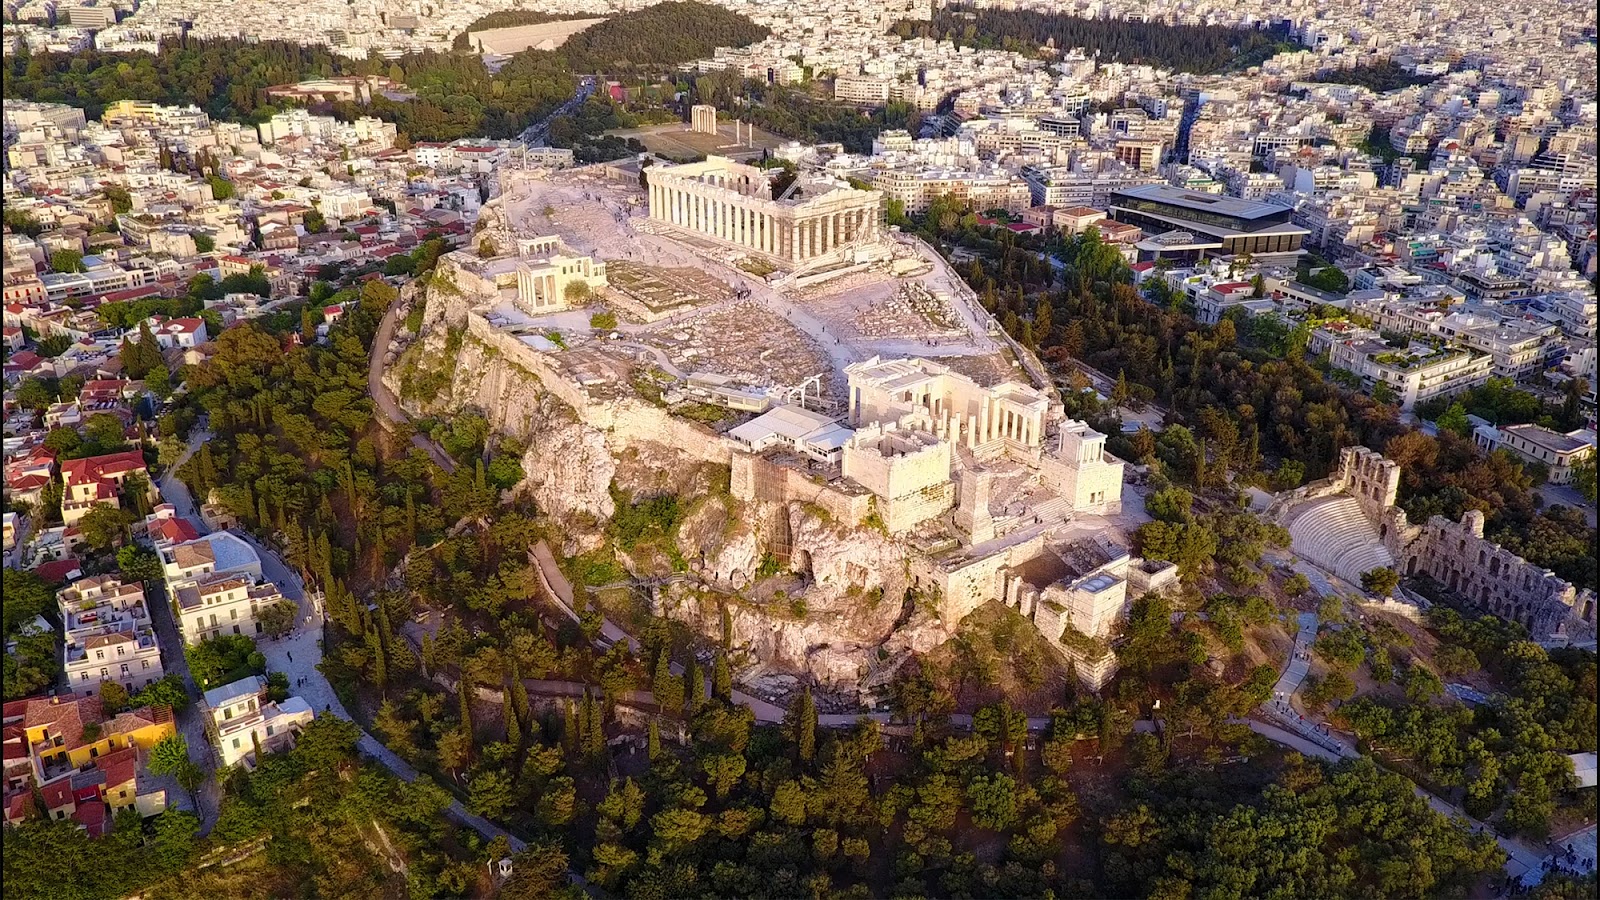 Η Εφορεία Αρχαιοτήτων Πόλης Αθηνών σχεδιάζει να διευρύνει την κυκλοφορία των επισκεπτών στο ανατολικό τμήμα του πλατώματος της Ακρόπολης και να βελτιώσει την «αναγνωρισιμότητά» του.